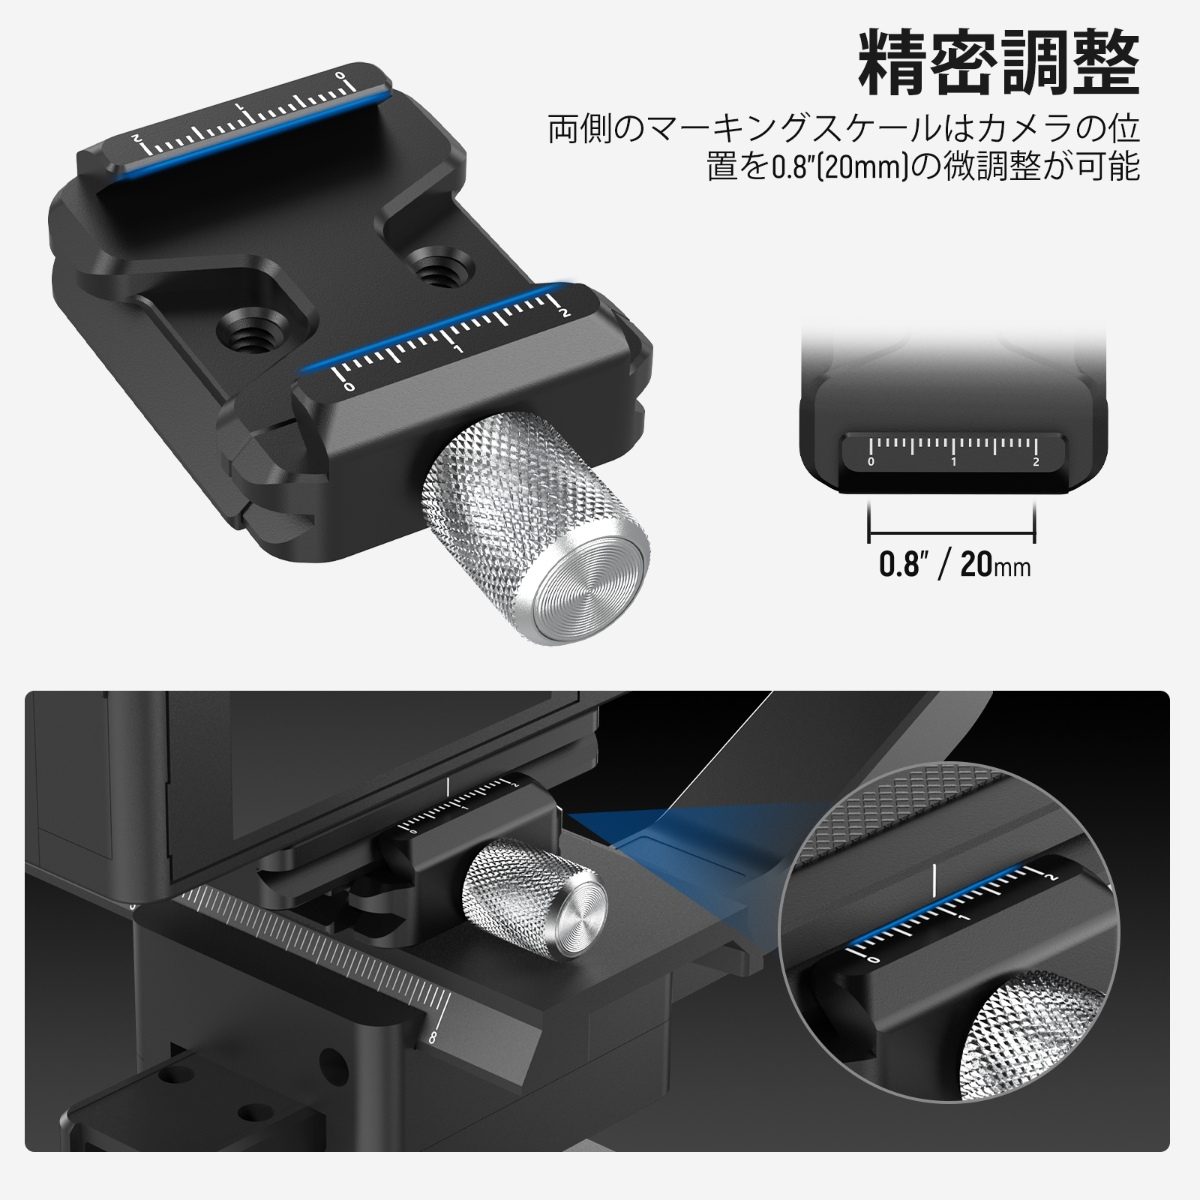 【人気商品】NEEWER Arcaタイプクイックリリースクランプ DSLRカメラ